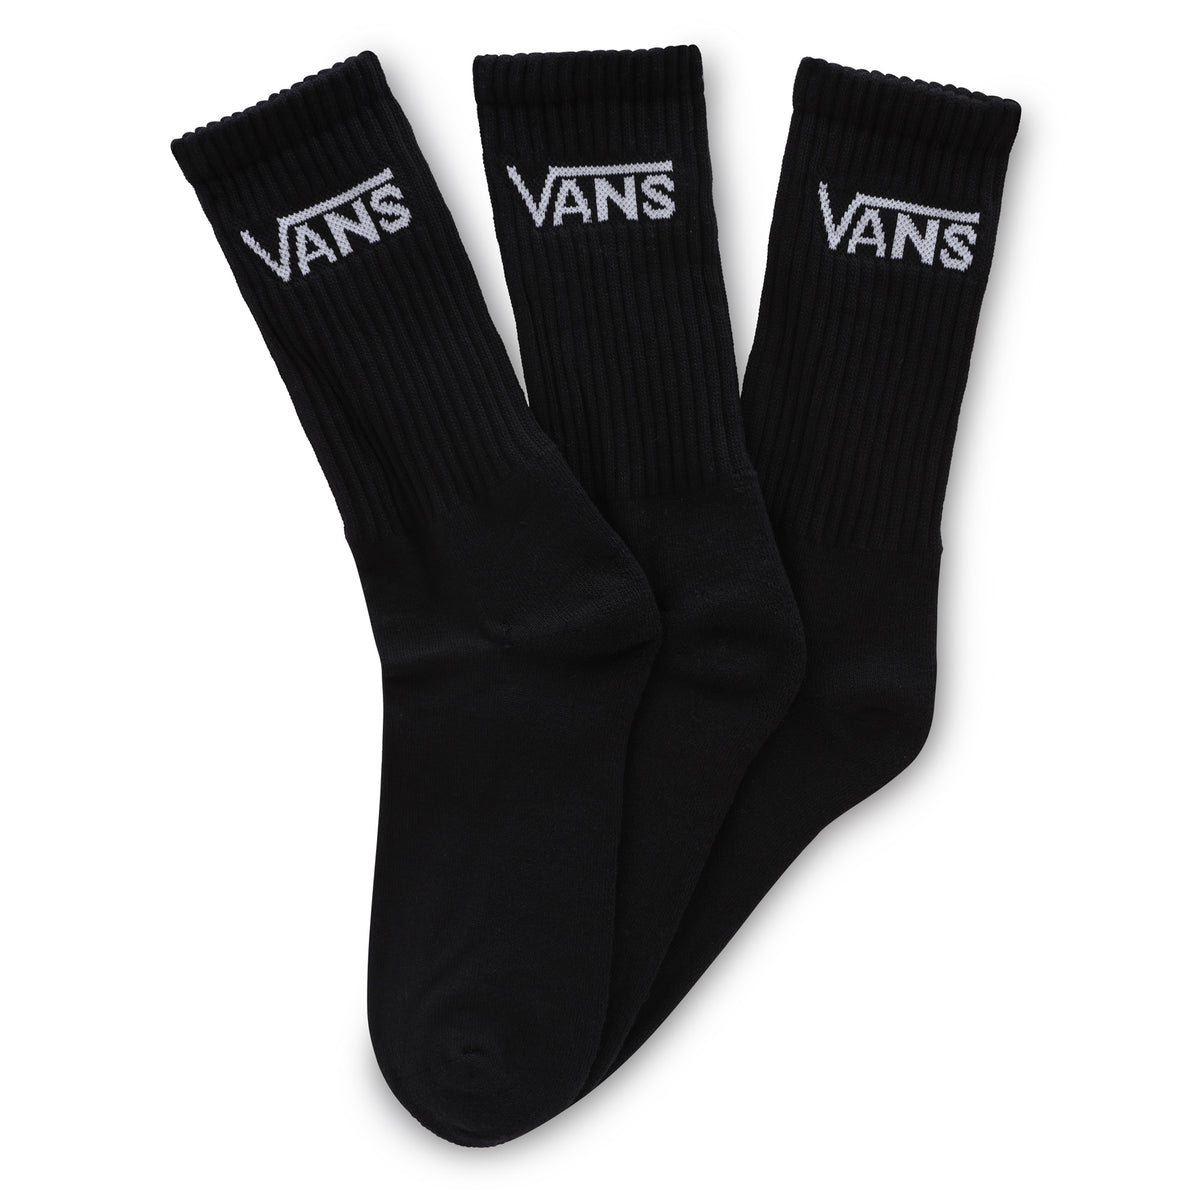 ואנס מארז 3 זוגות גרביים גבוהות 42.5-47 בצבע שחור-Vans-One Size-נאקו